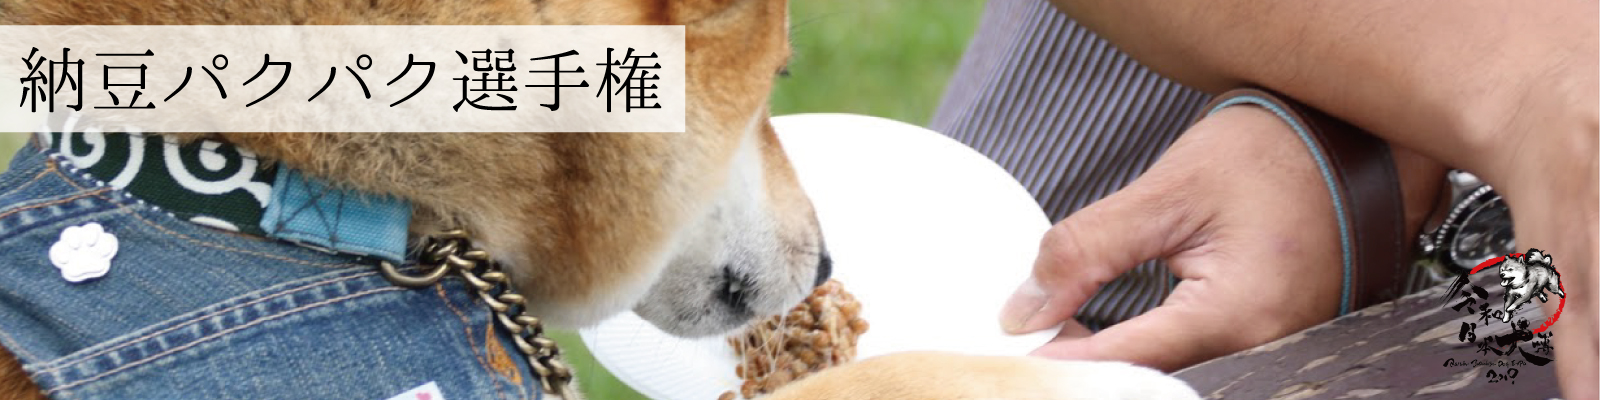 納豆パクパク選手権 令和日本犬博公式サイト